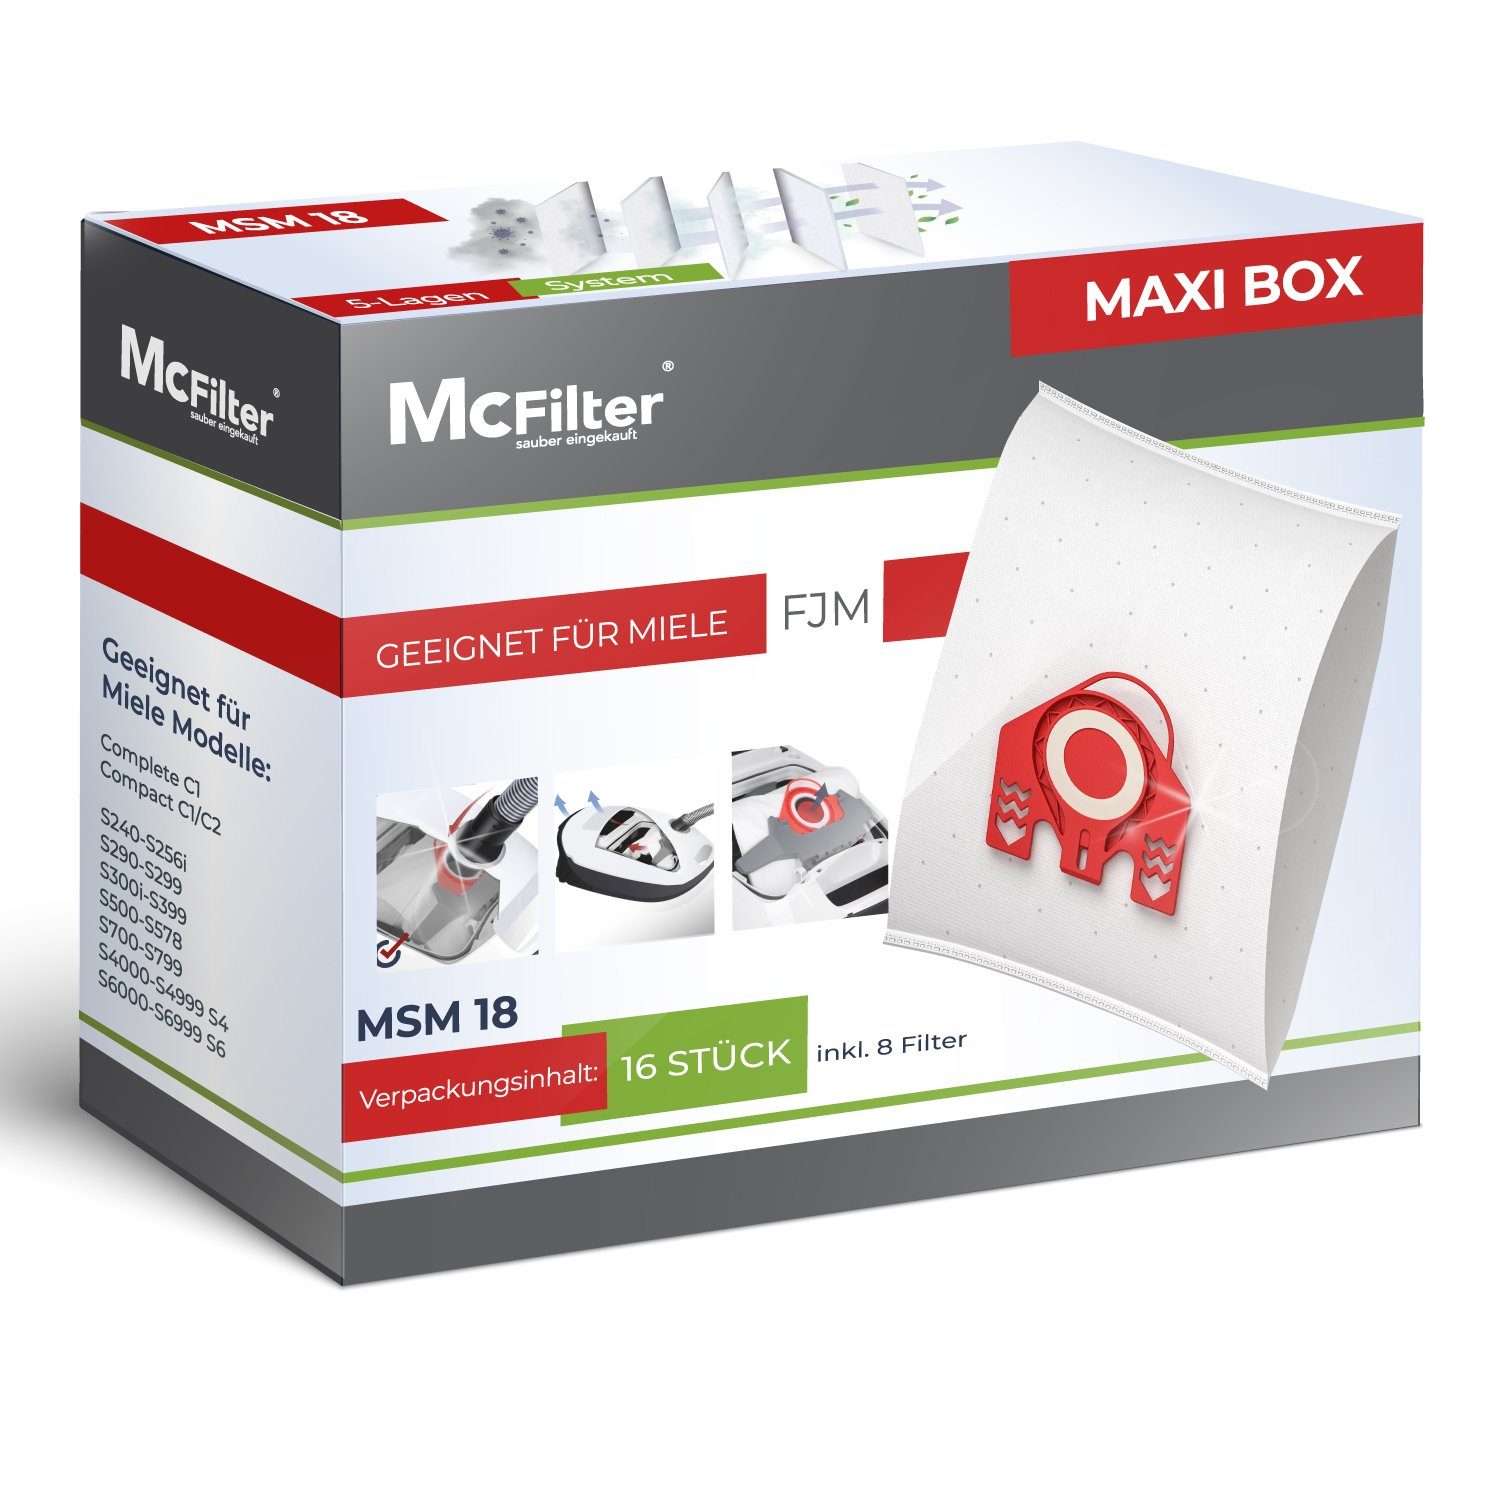 S712-1 MAXI Jazz Top S371, Miele Alternative passend Staubsaugerbeutel BOX Miele für 16 Filter, Staubsauger, St., 16+8, Plus 8 9917710, inkl. wie McFilter zu 10408420